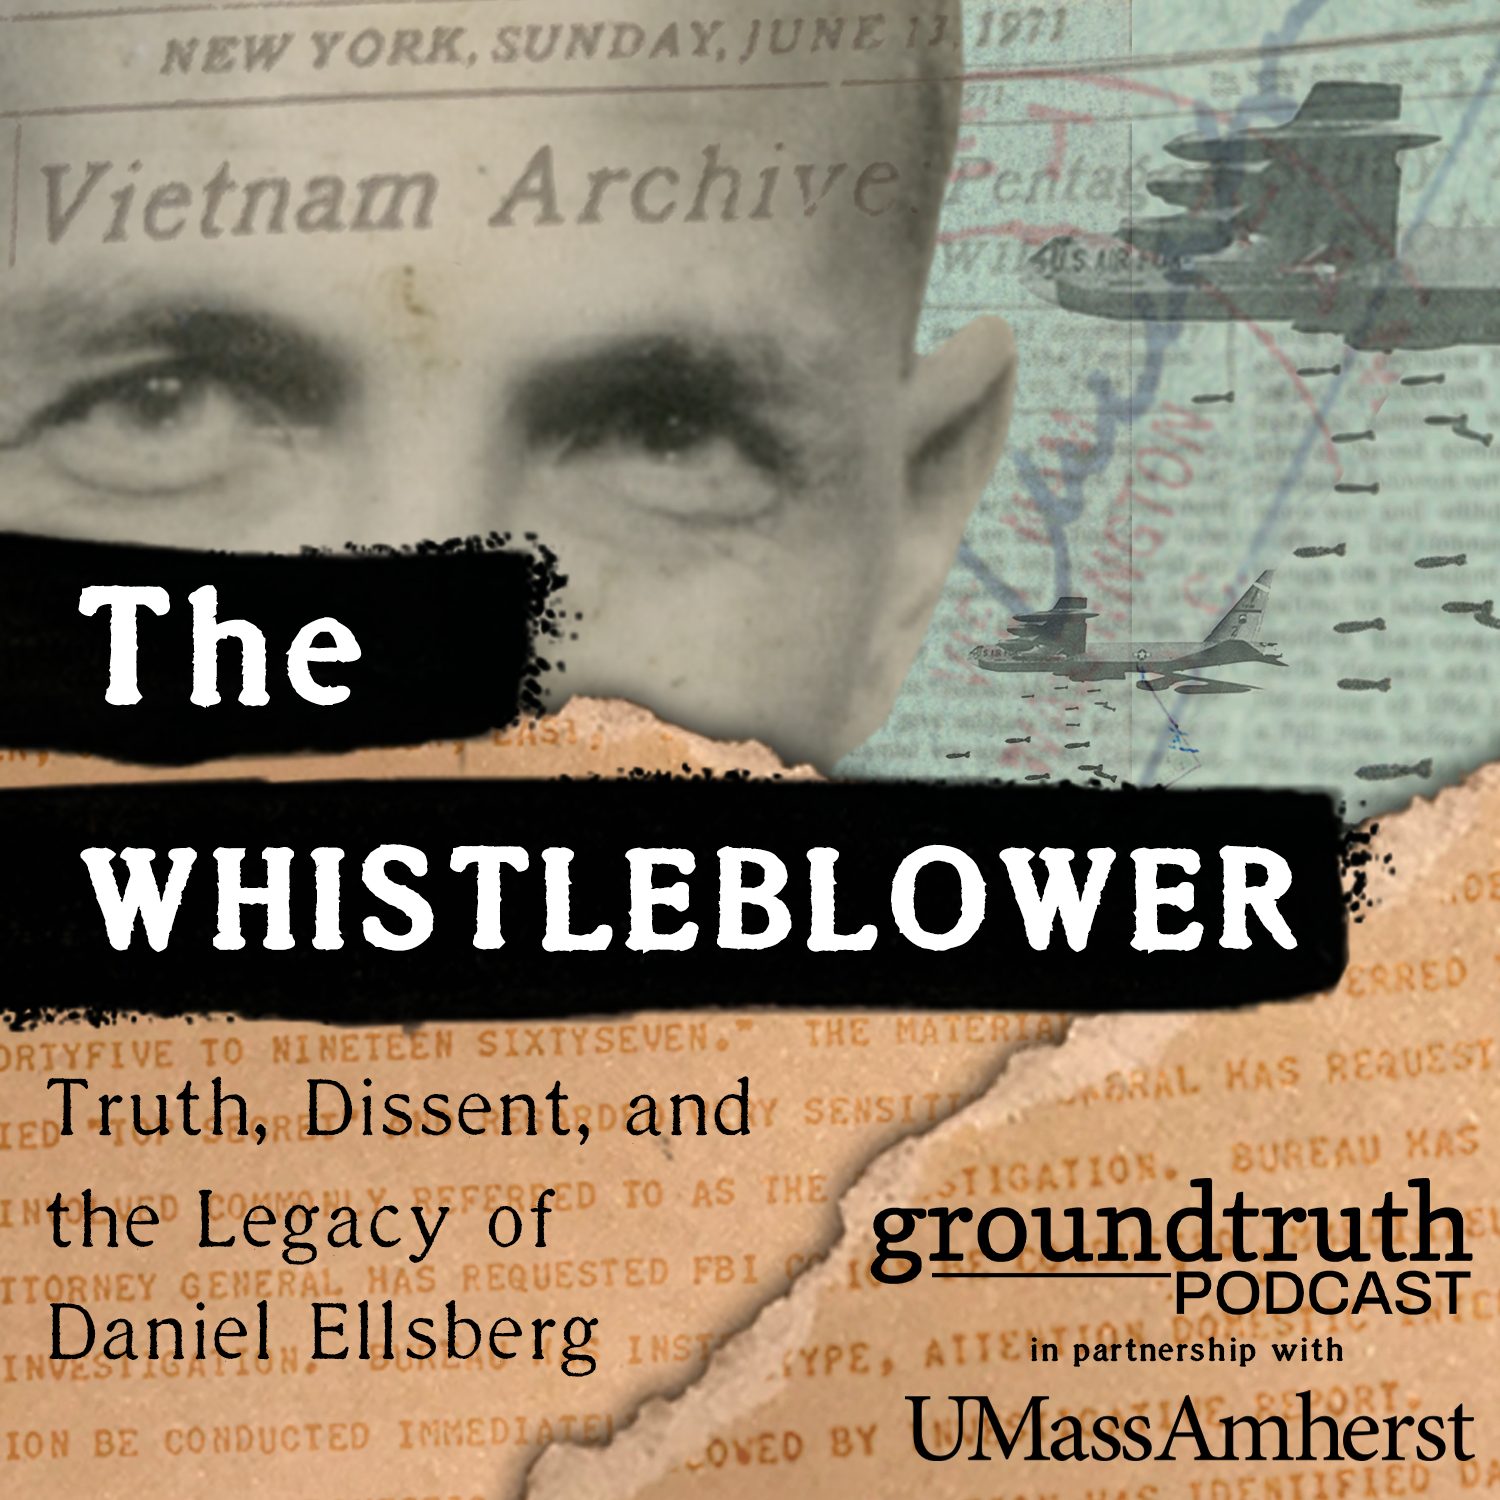 The Whistleblower: Truth, Dissent & the Legacy of Daniel Ellsberg TRAILER